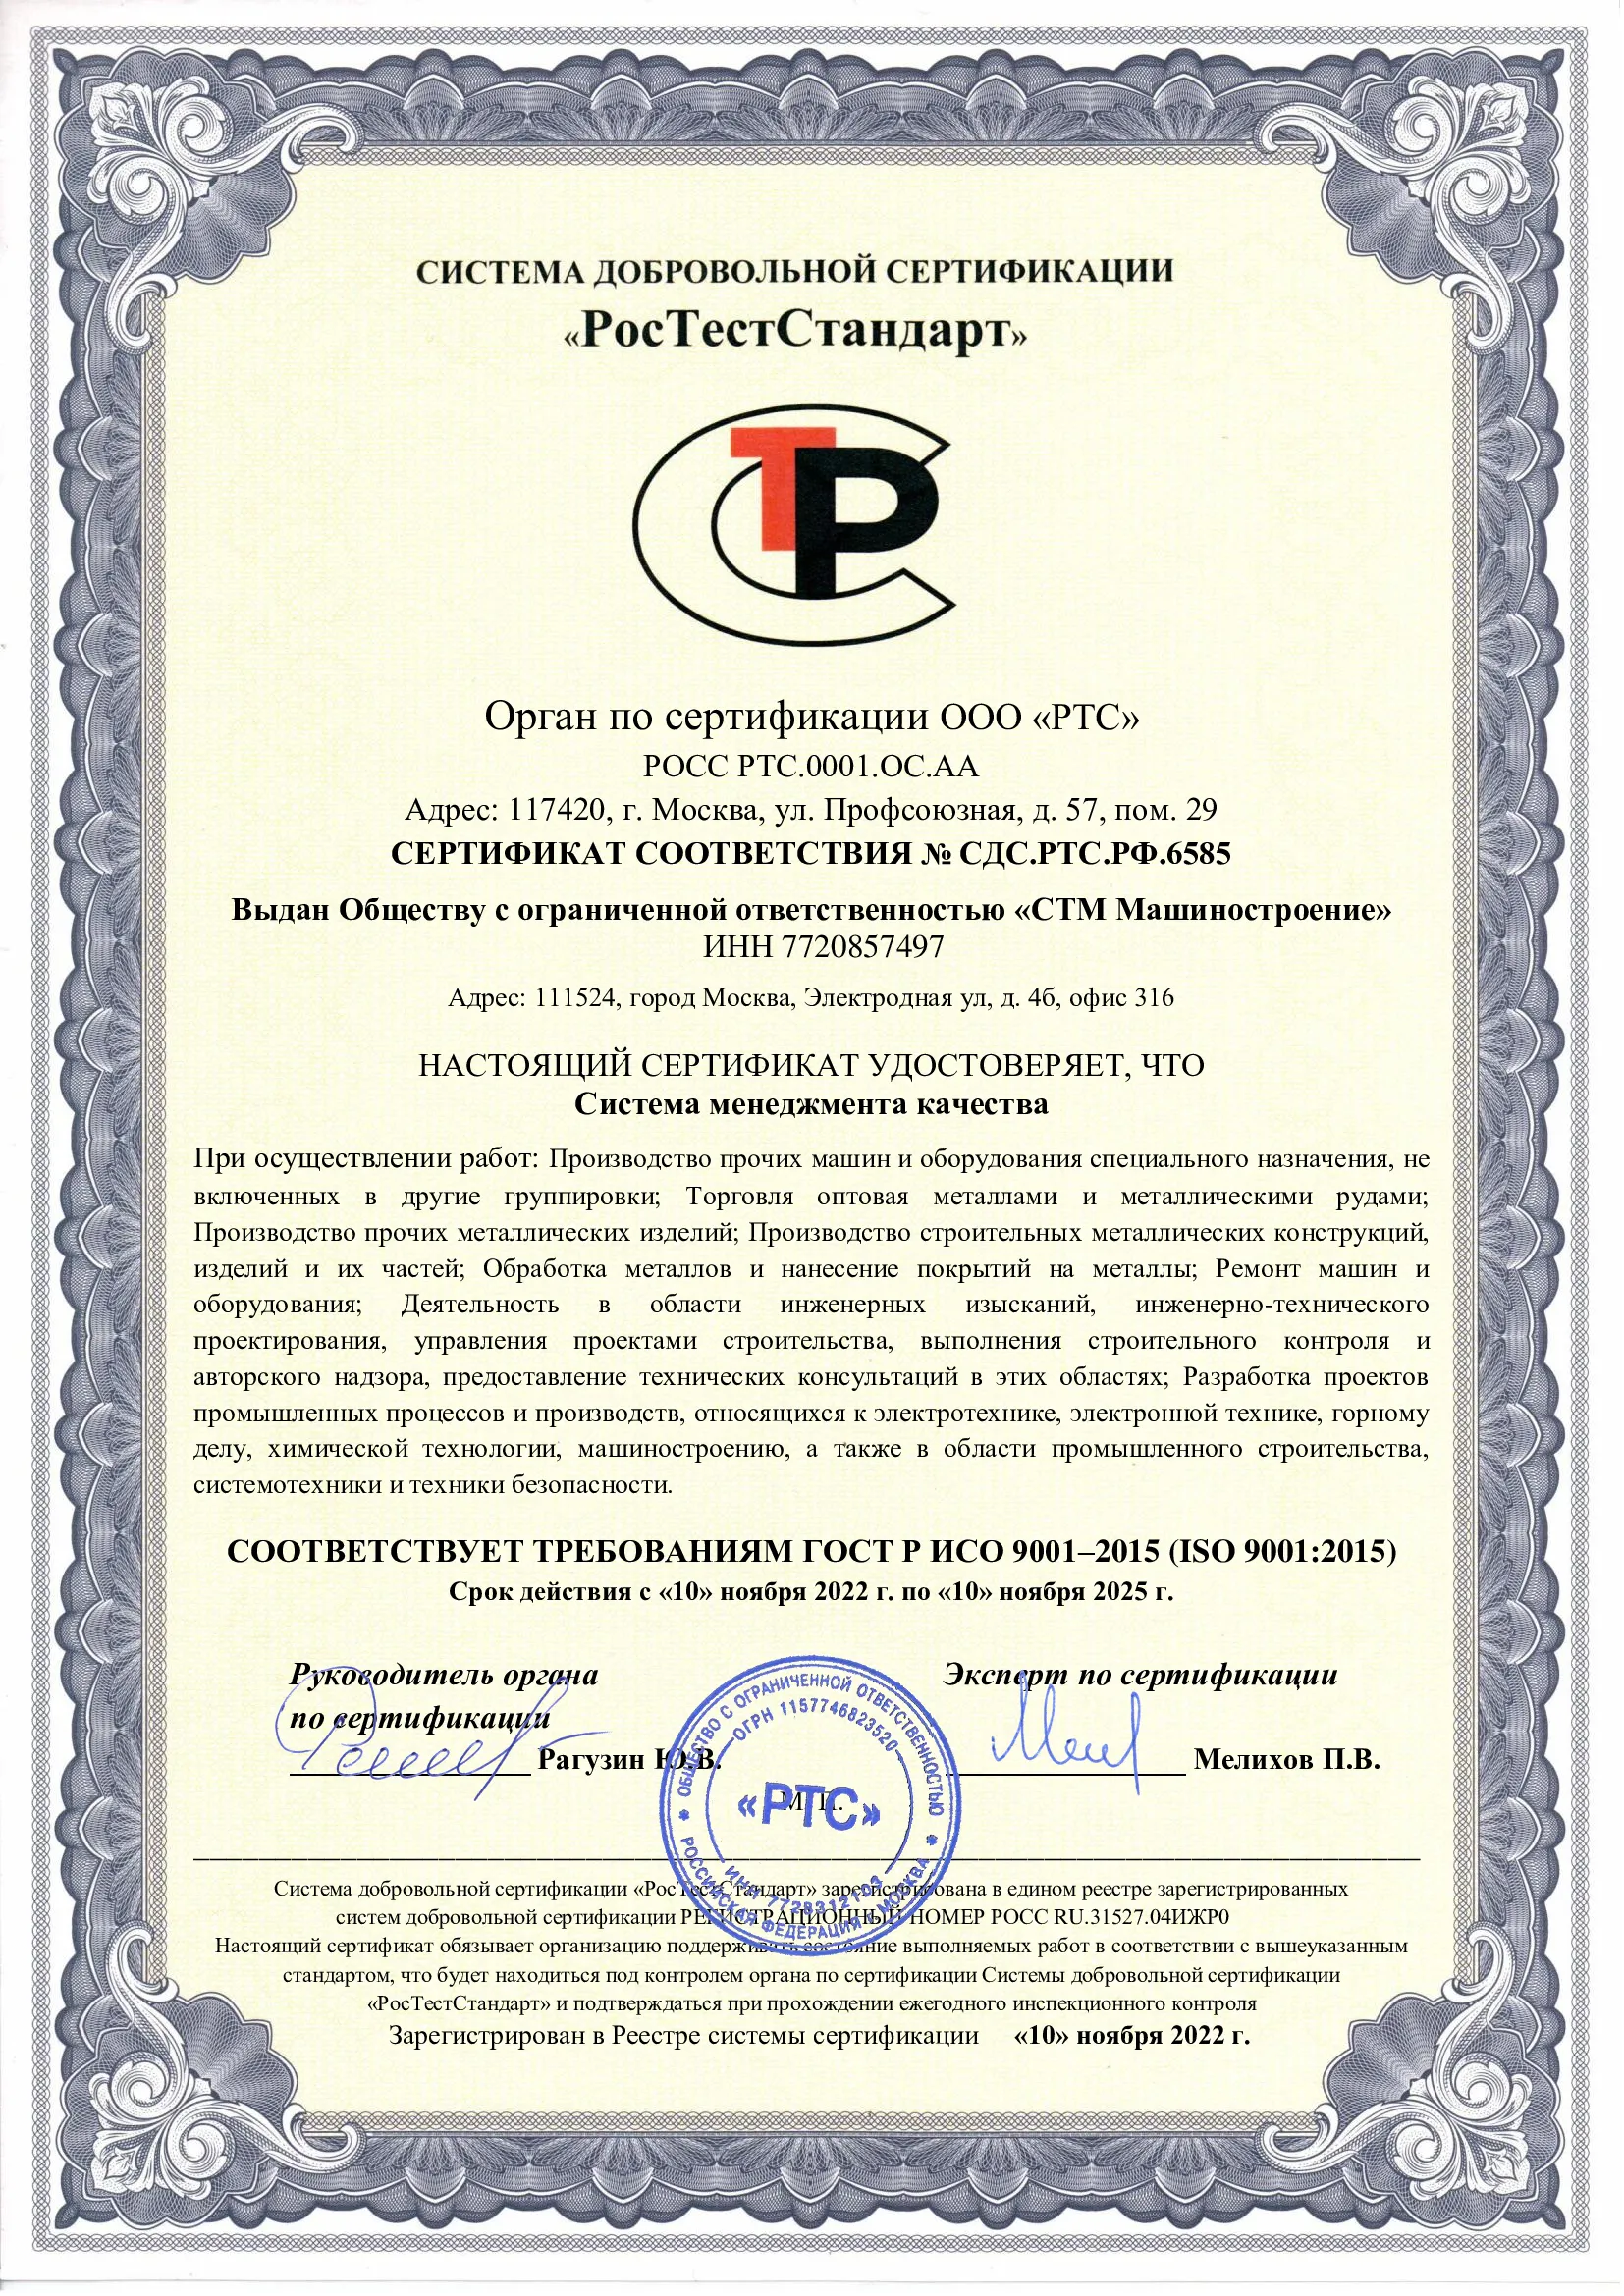 Сертификат РосТестСтандарт "Система менеджмента качества"